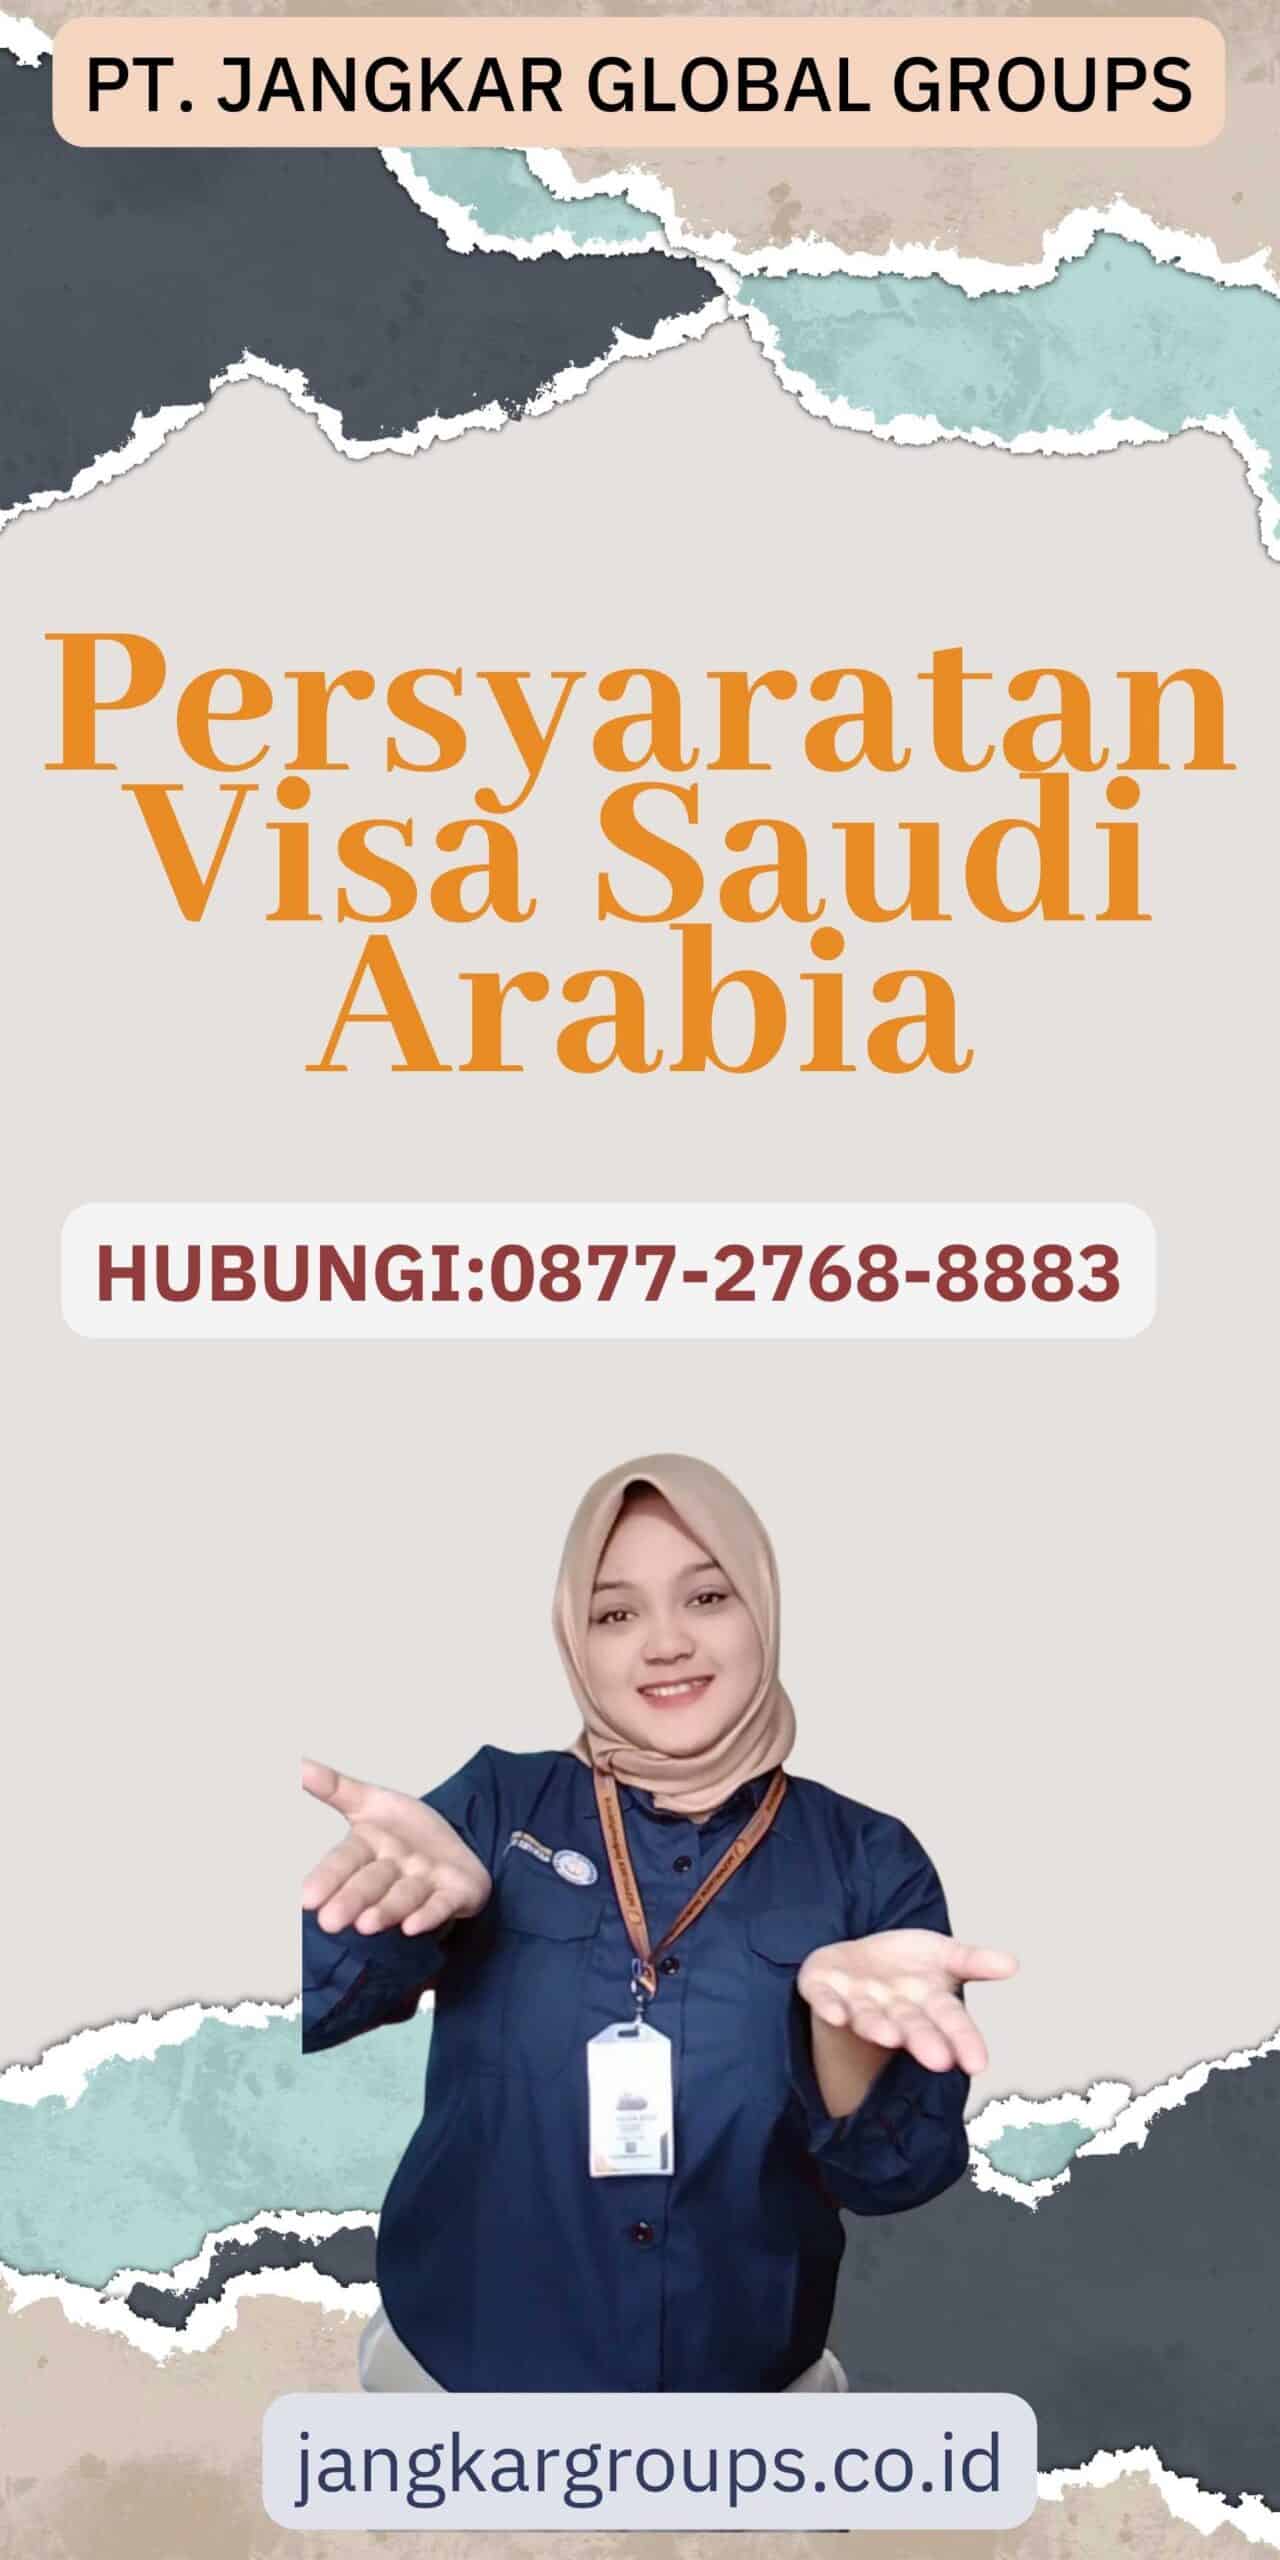 Persyaratan Visa Saudi Arabia